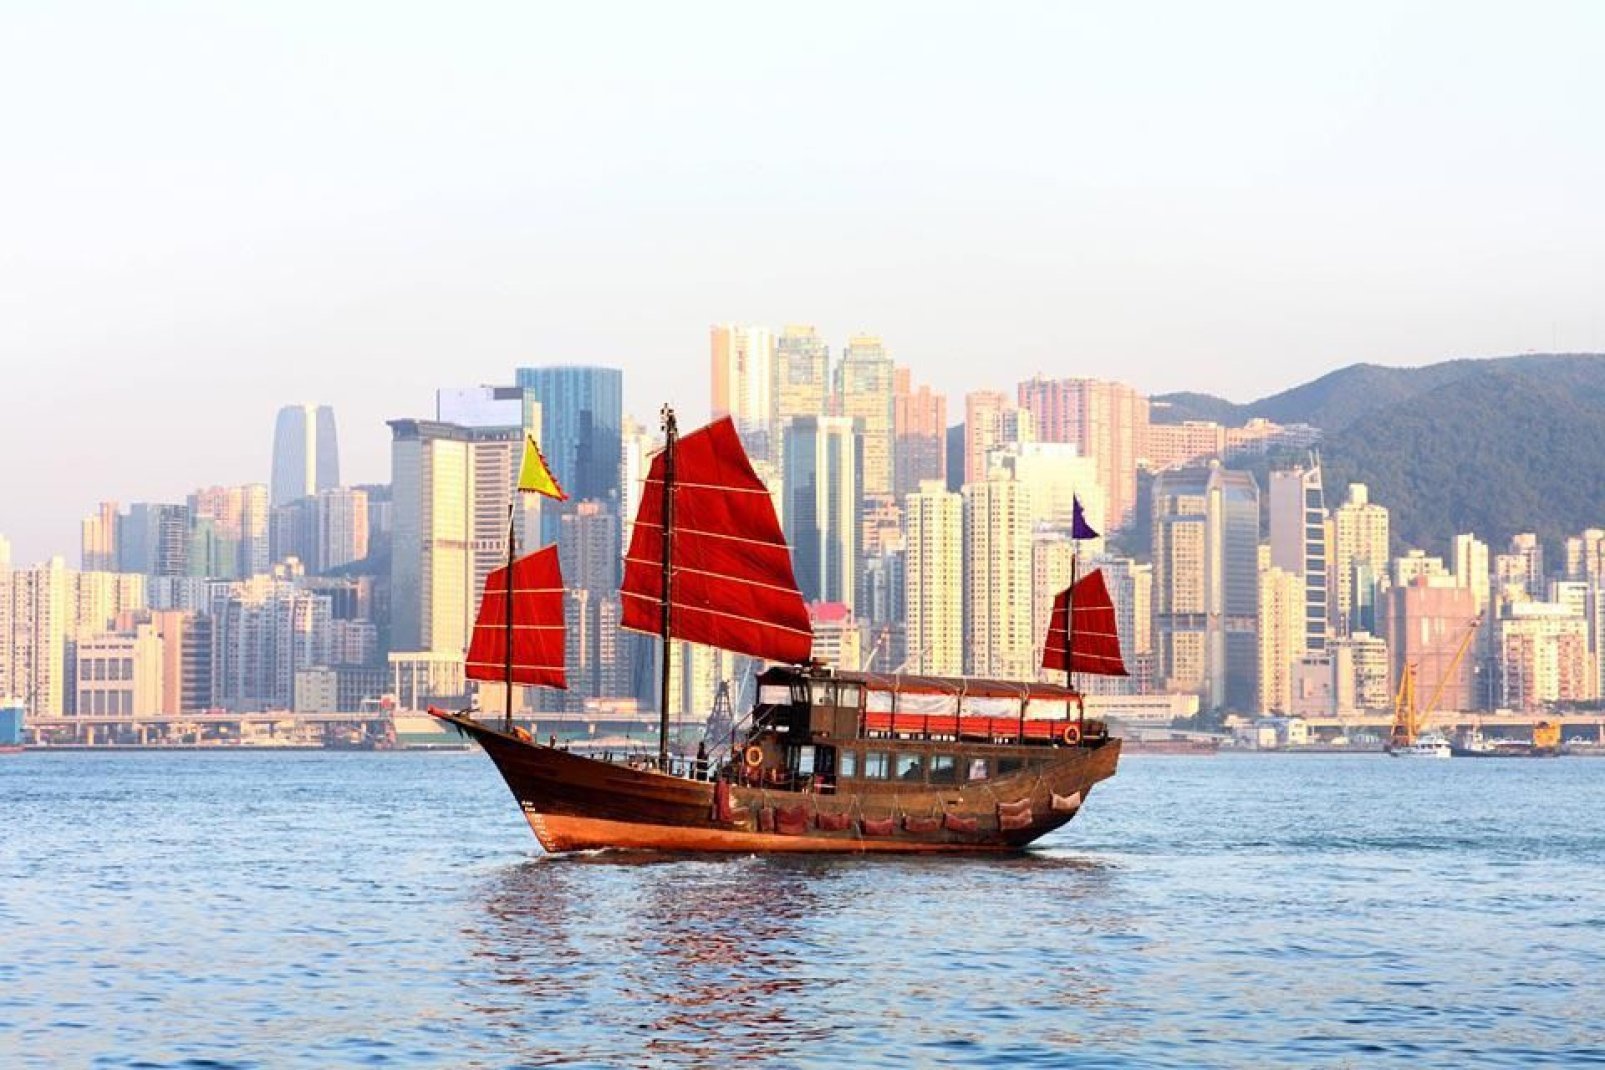 Questa imbarcazione tradizionale cinese naviga nei mari della penisola di Kowloon.